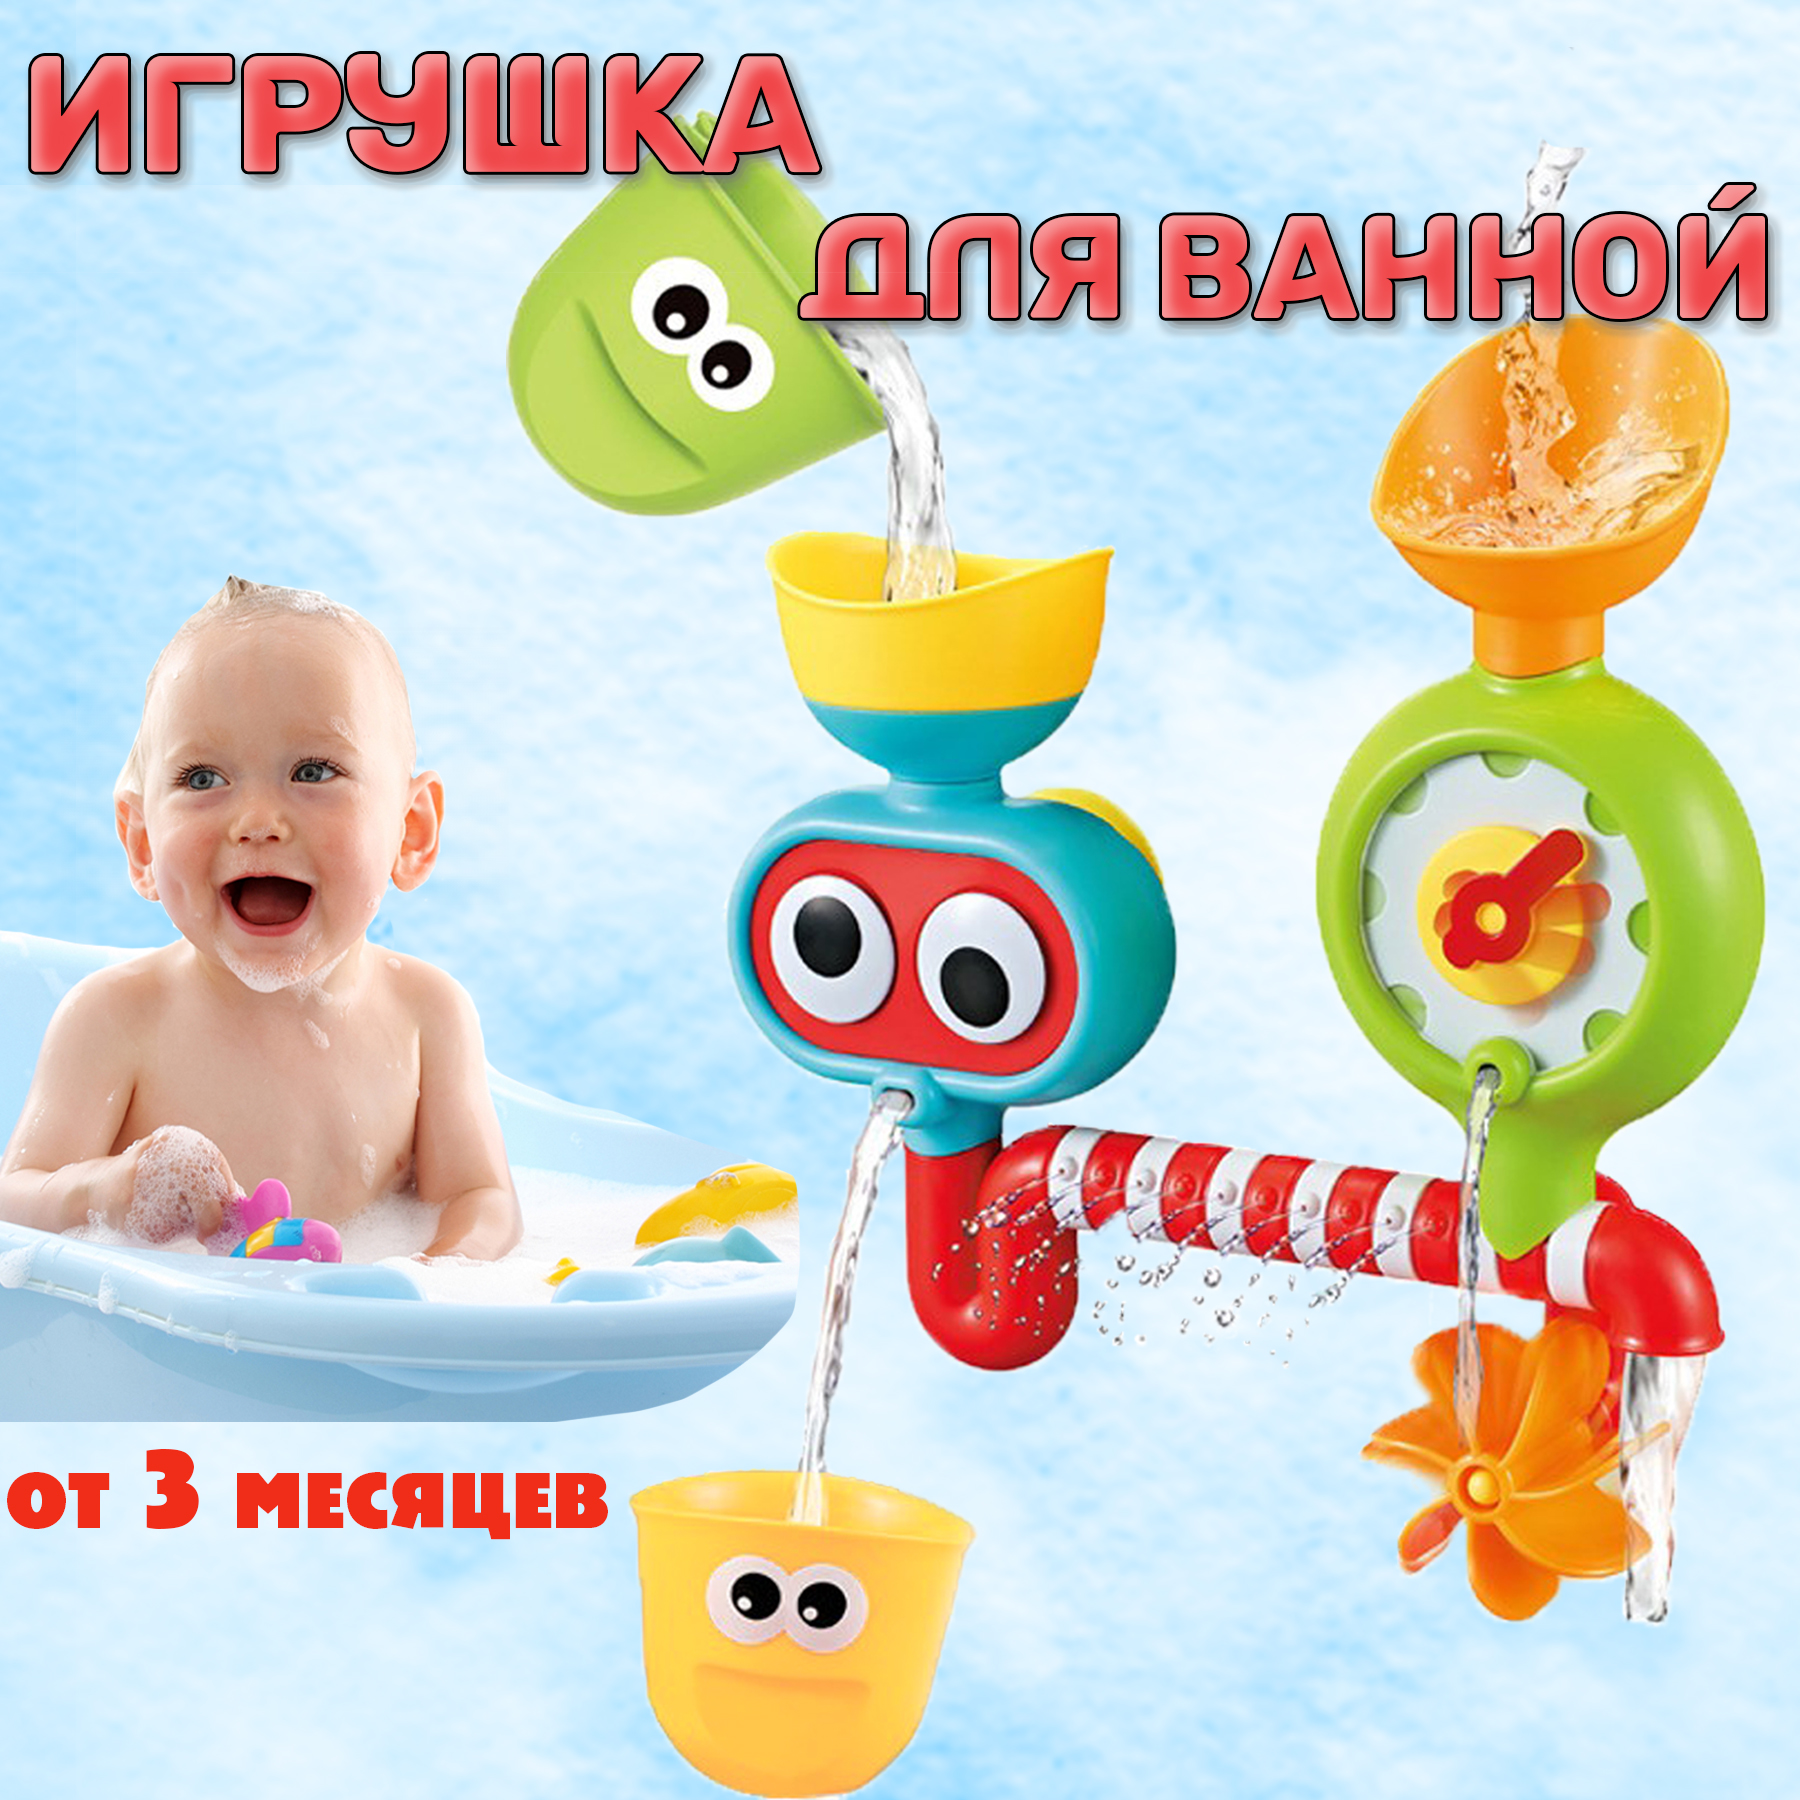 Игрушка для ванной BAZUMI набор на присосках для купания малышей - фото 1